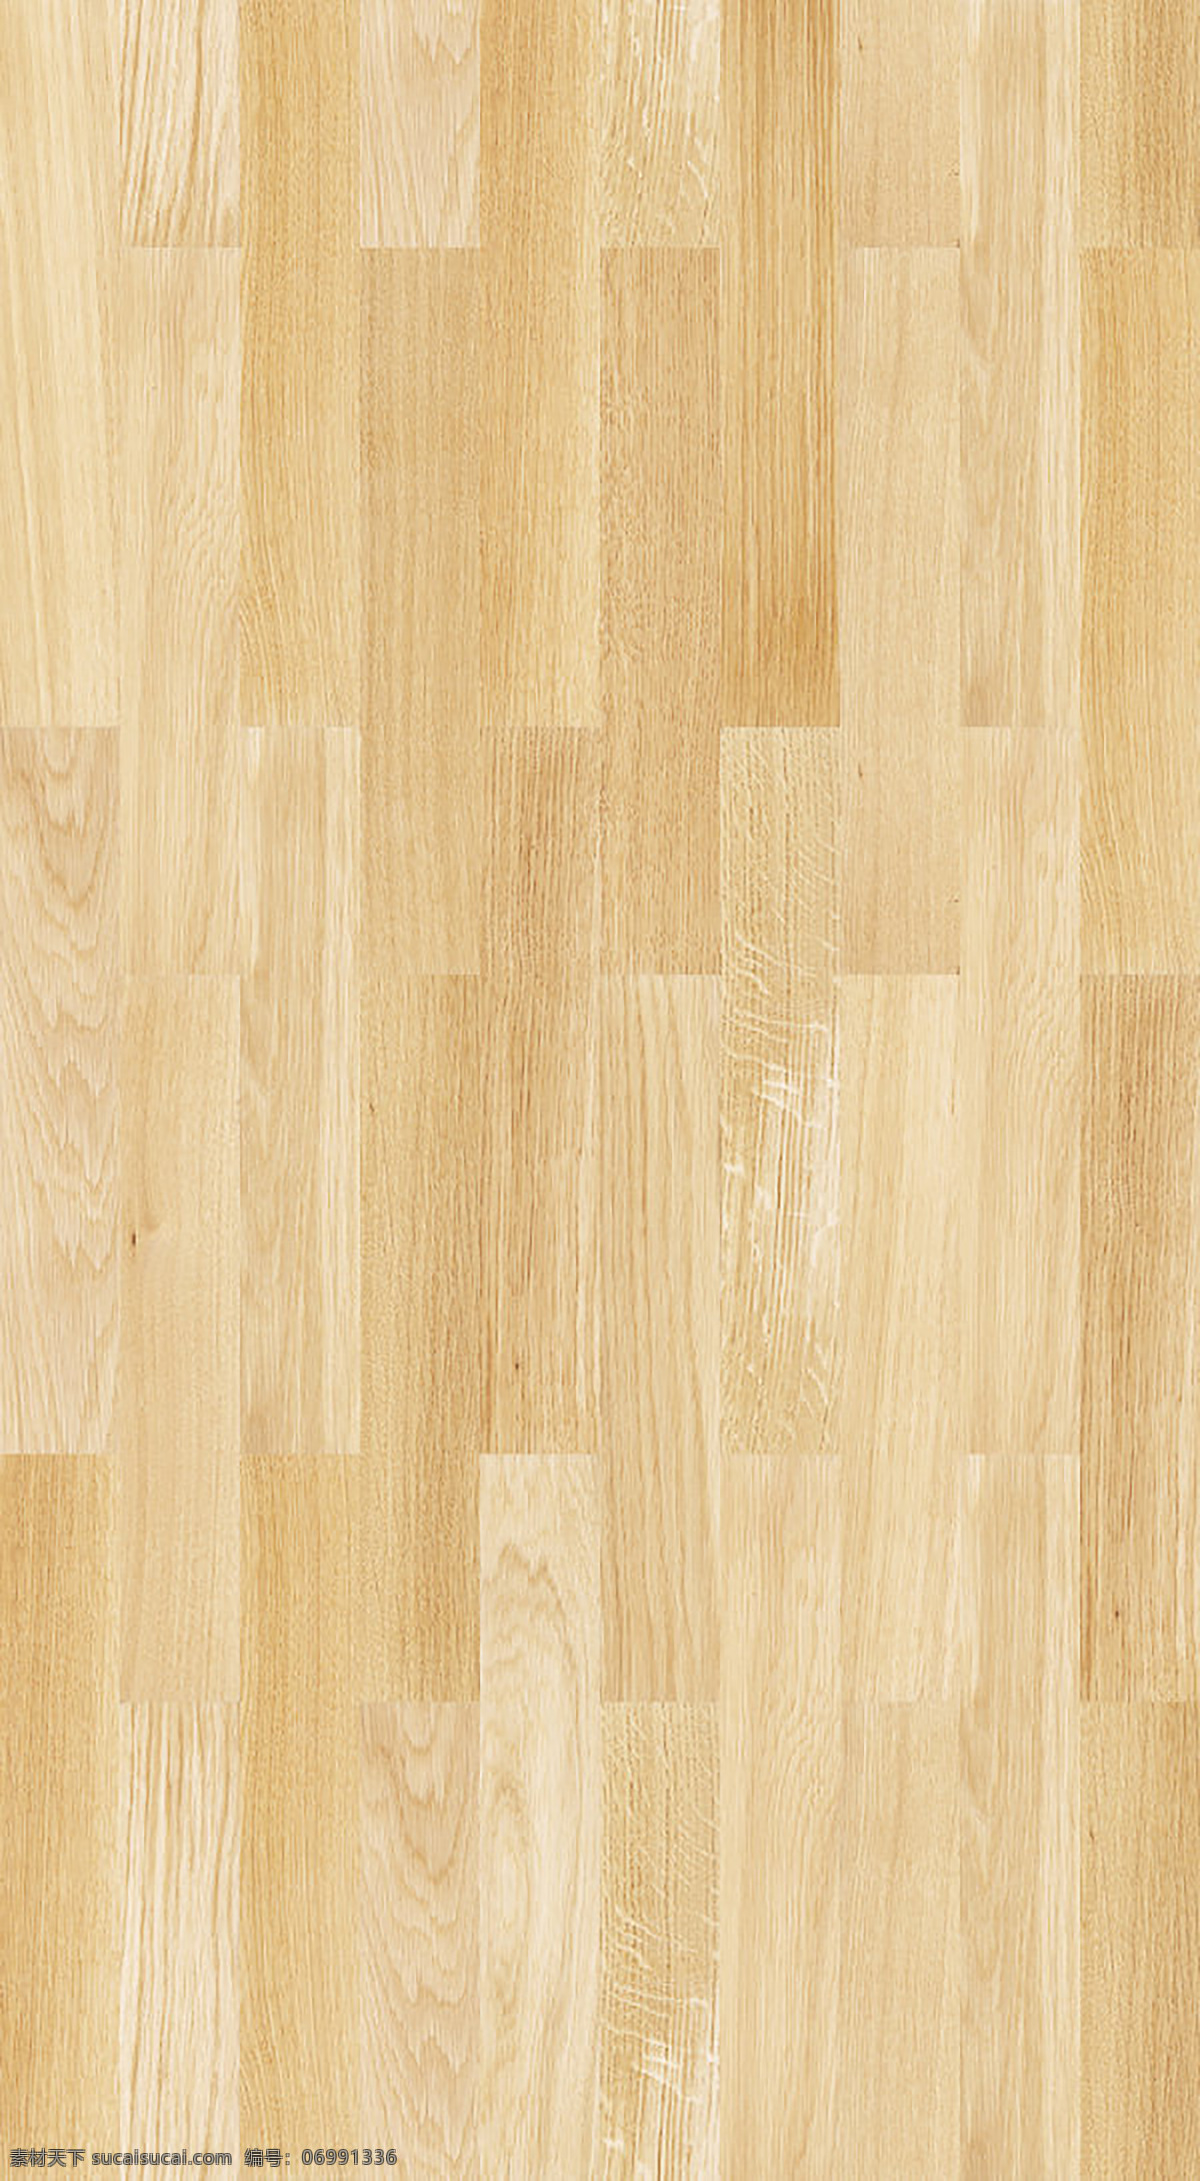 木材贴图 材质 贴图 木地板 橡木 黄色